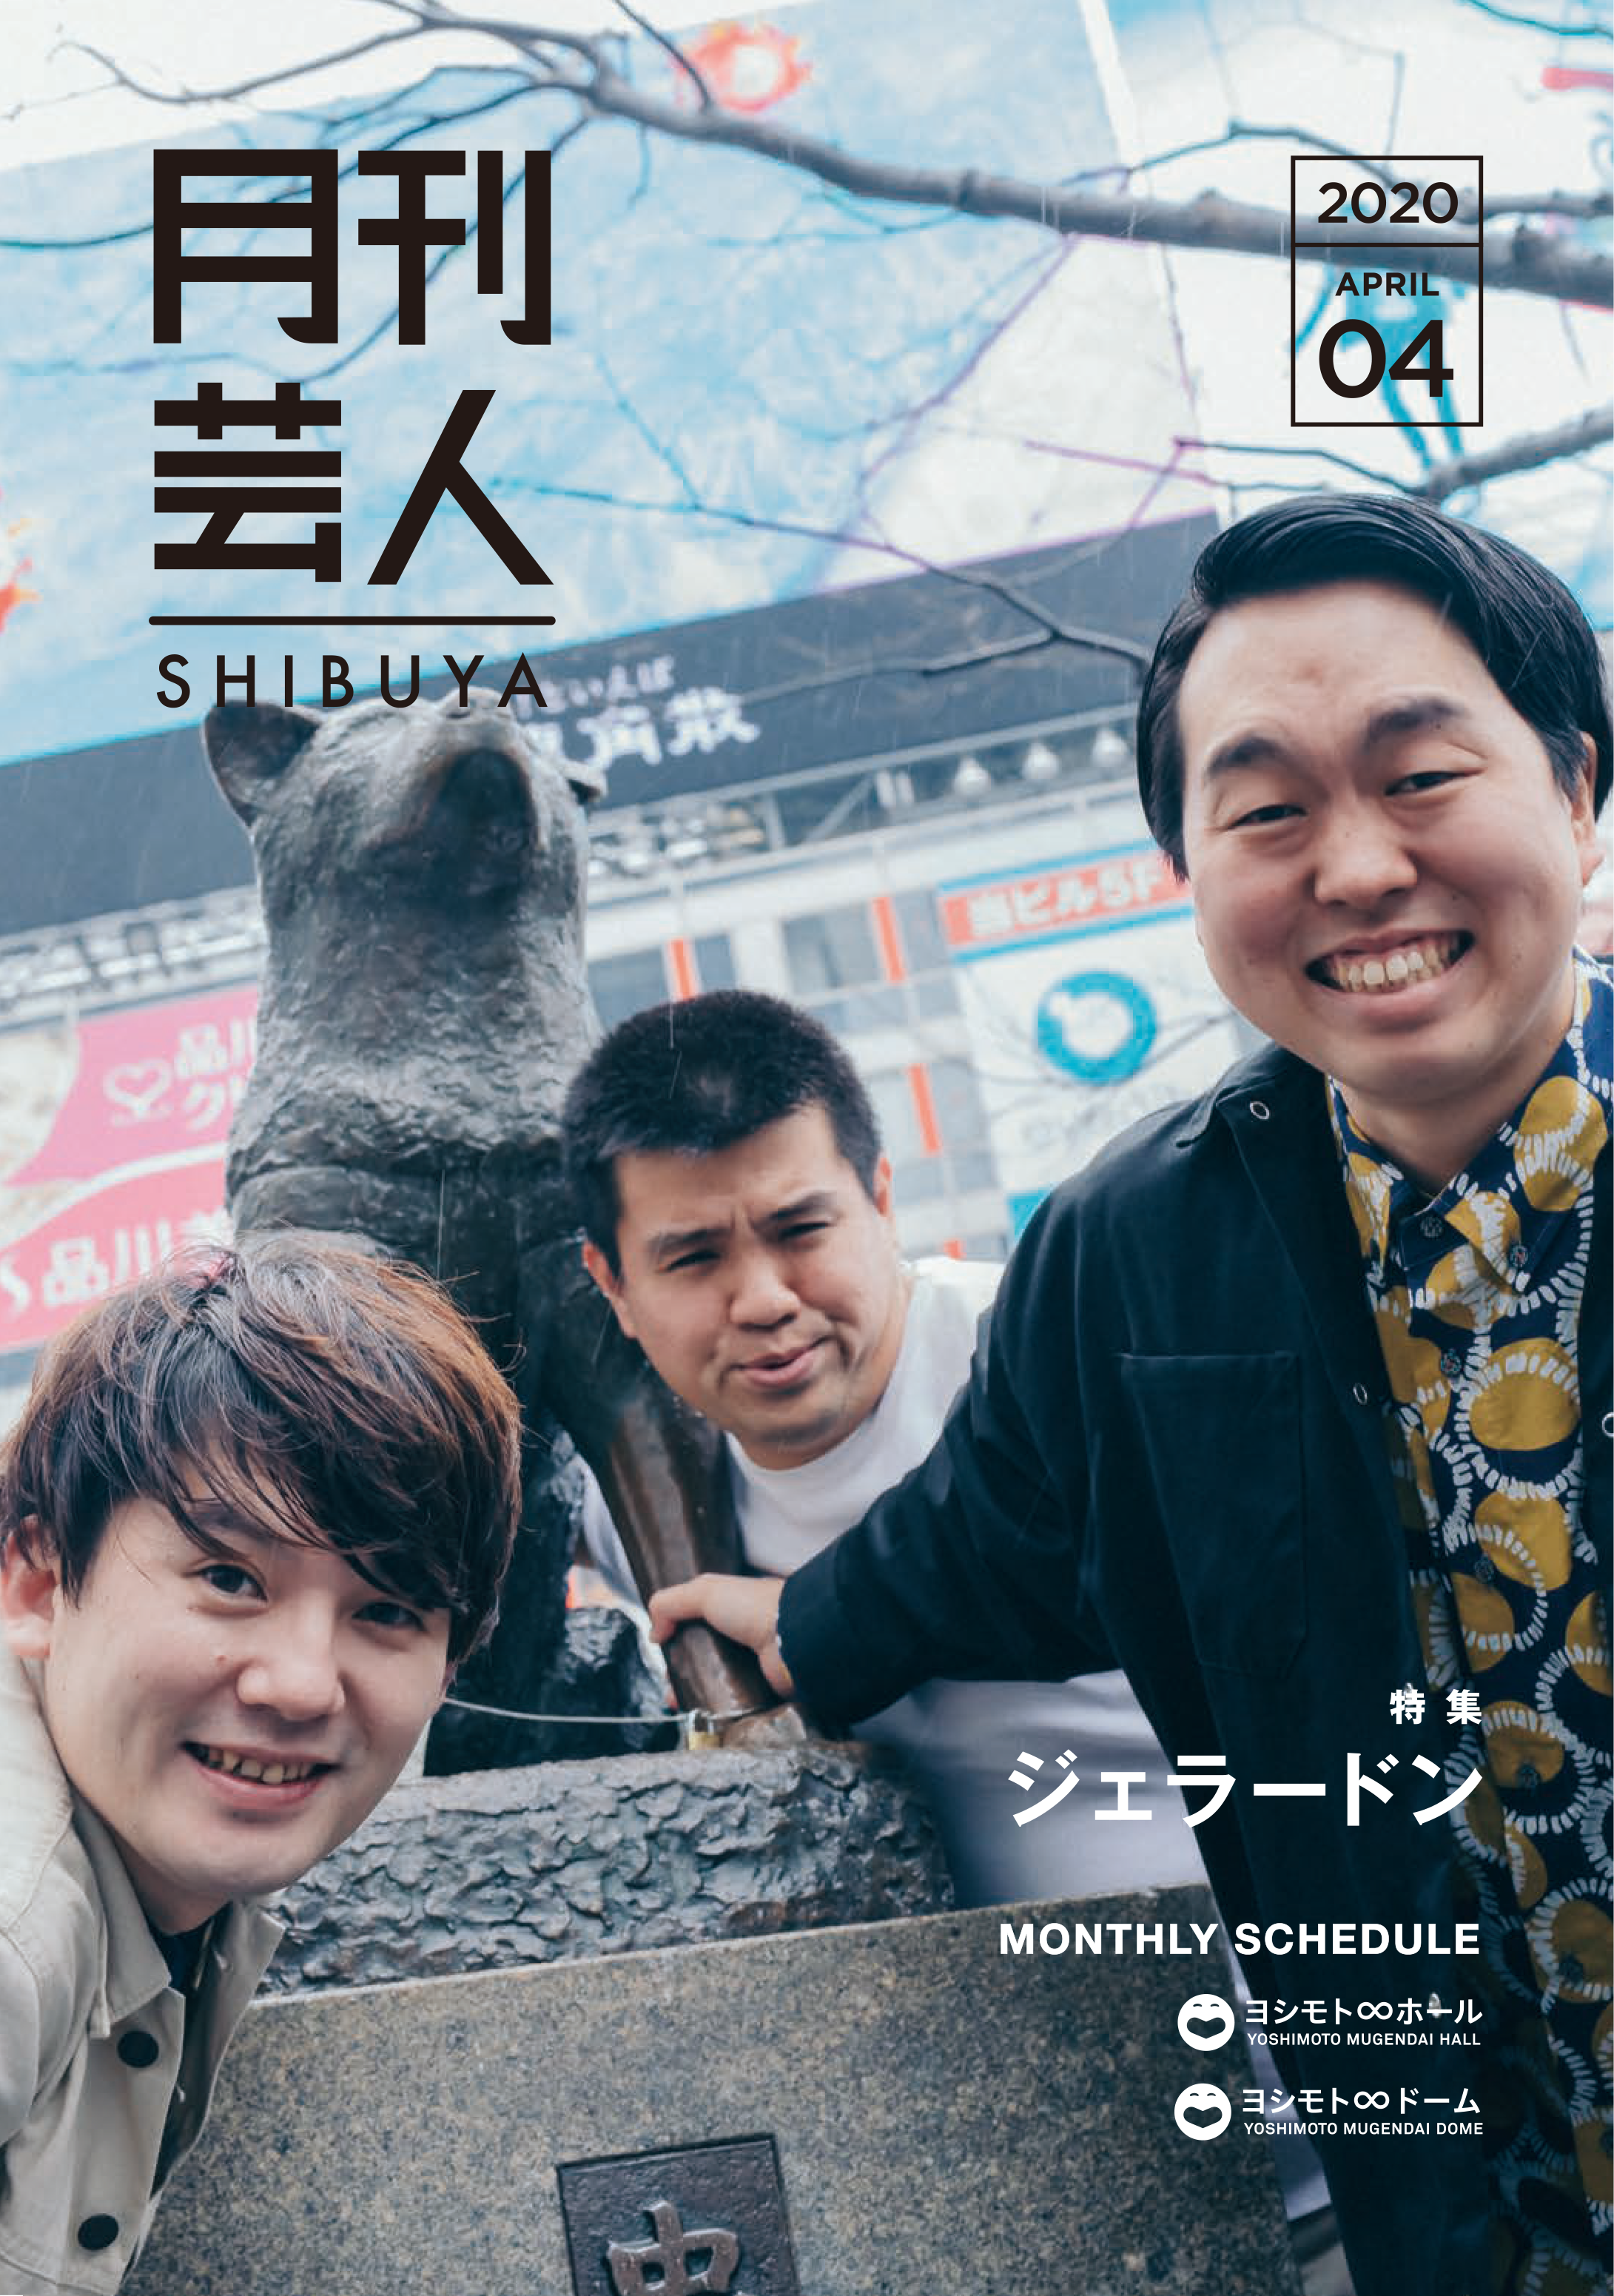 ヨシモト ホール発行フリーペーパー 月刊芸人shibuya 4月号表紙はジェラードン 吉本興業株式会社のプレスリリース